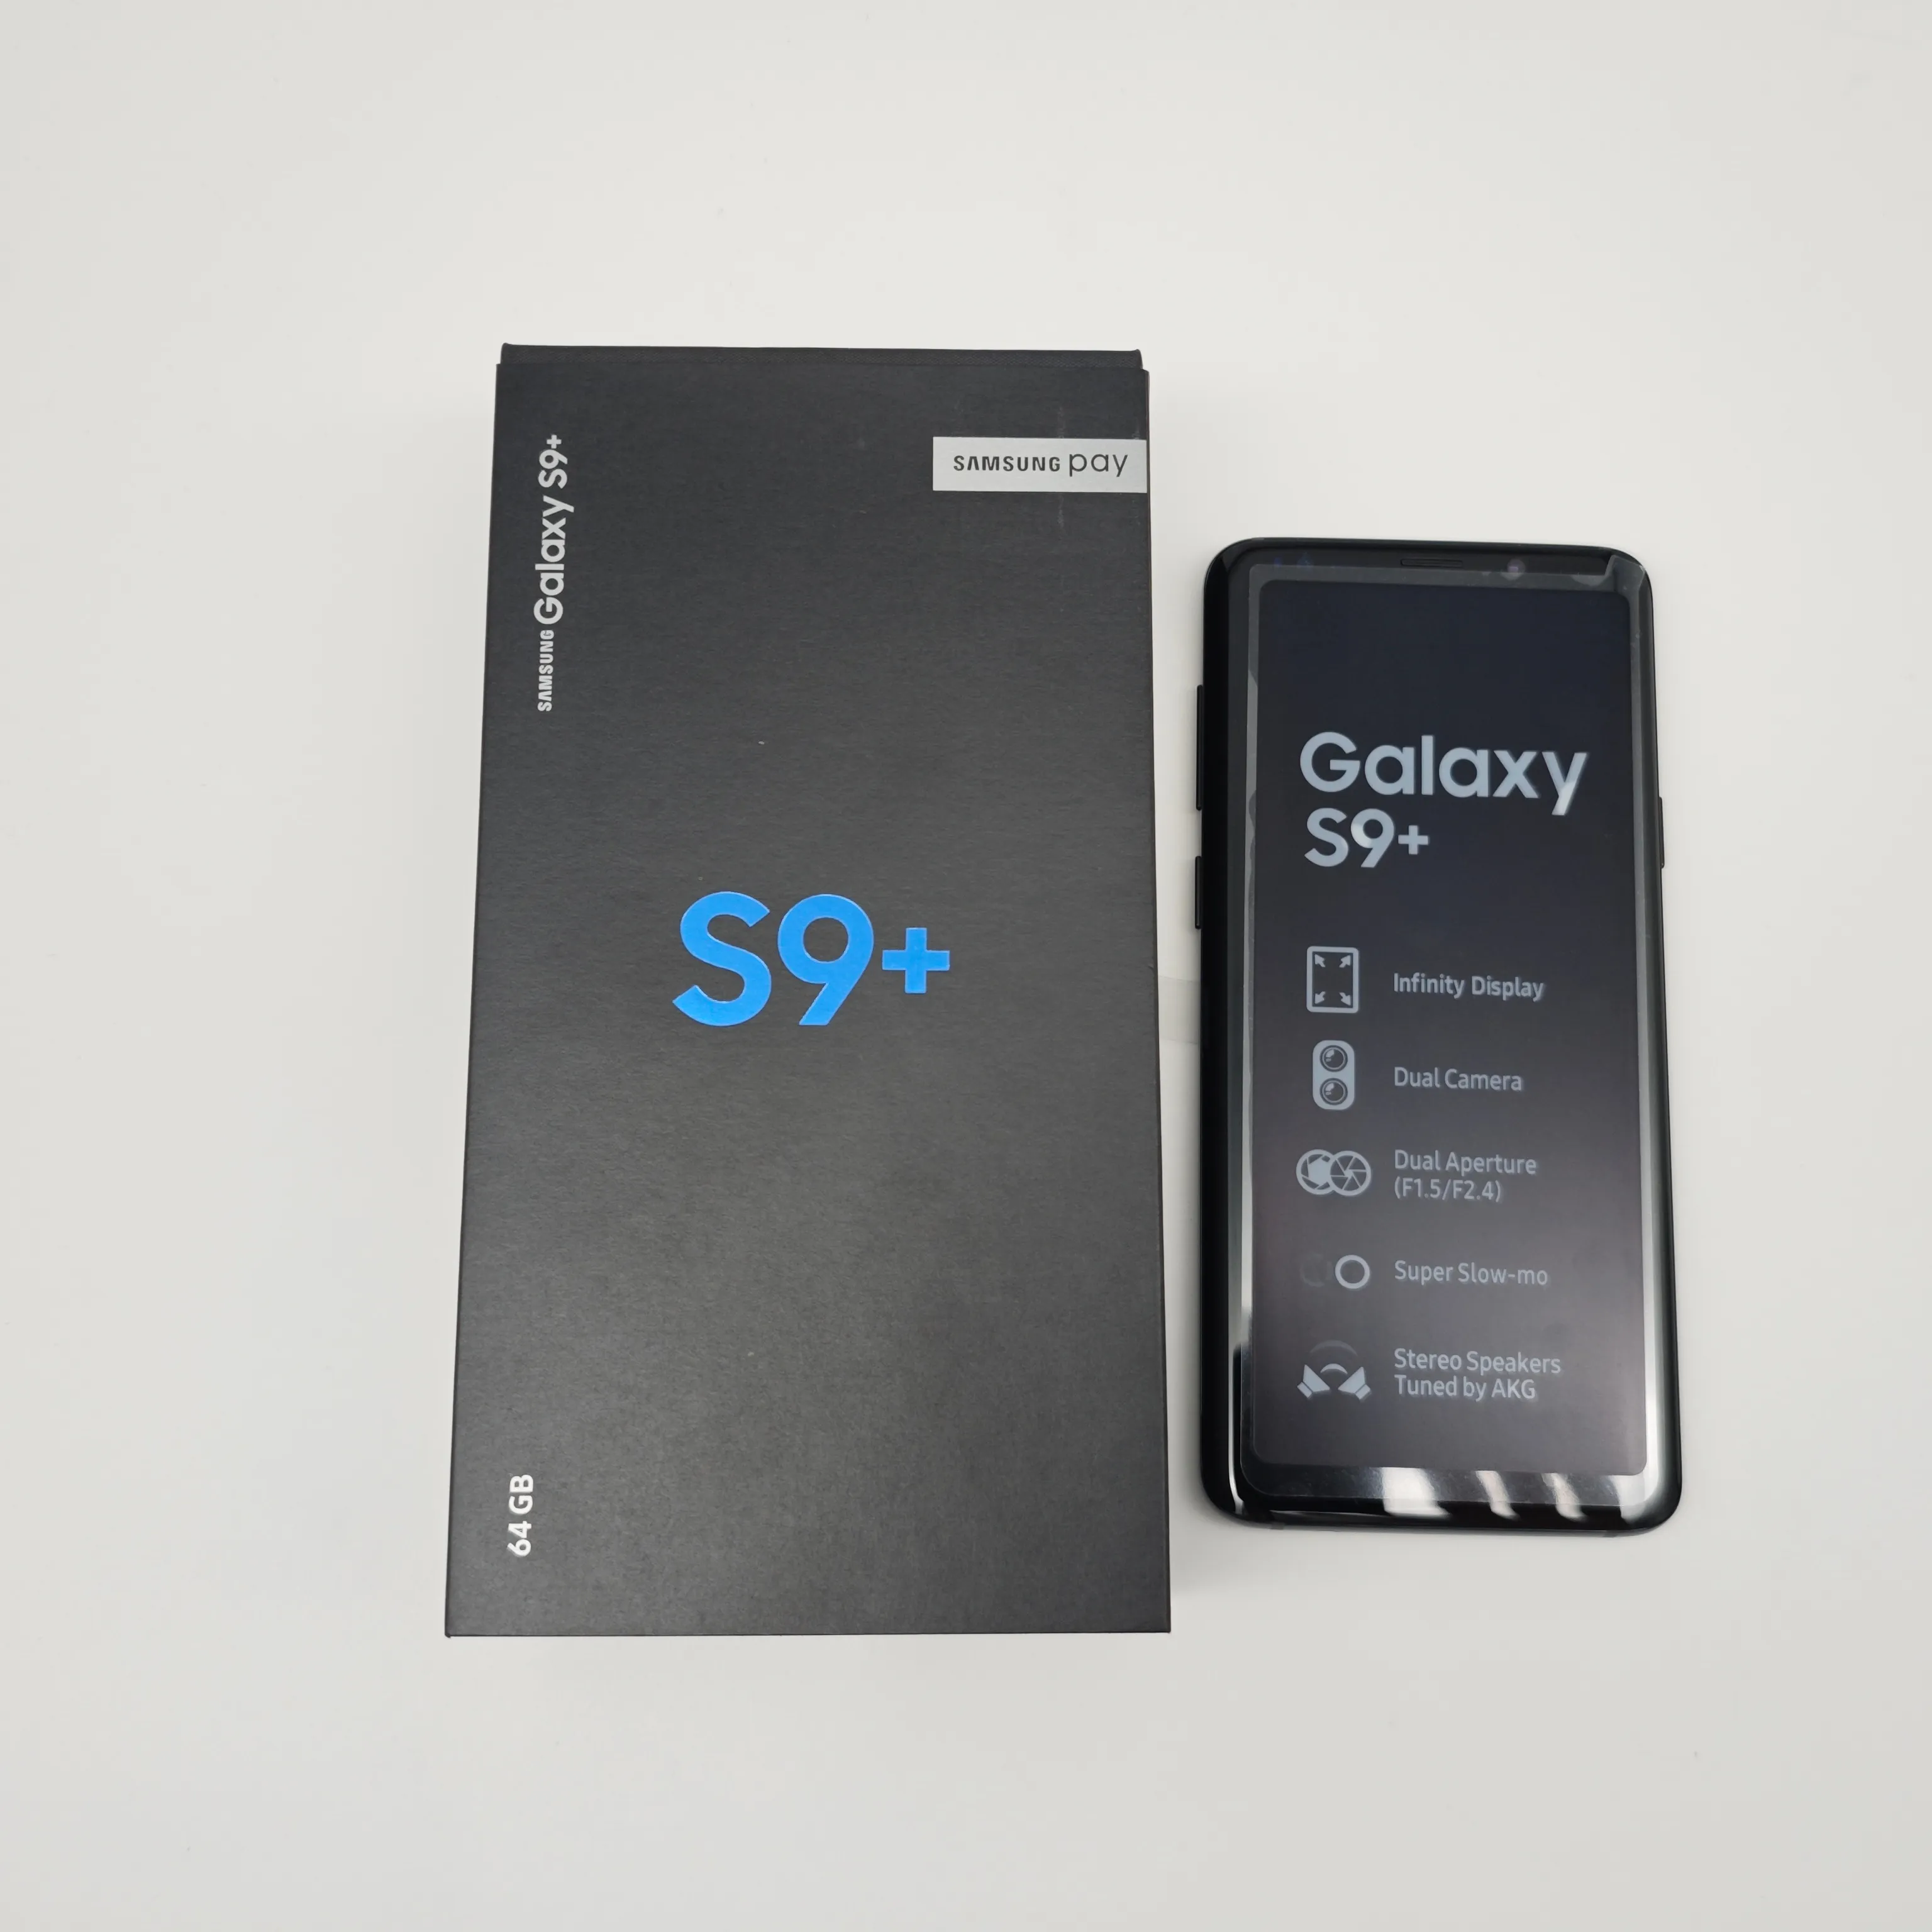 फ़ैक्टरी थोक में प्रयुक्त अनलॉक मूल सेल फ़ोन सैमसंग गैलेक्सी S9+ एंड्रॉइड बड़ी स्क्रीन वाला प्रयुक्त सेल फ़ोन